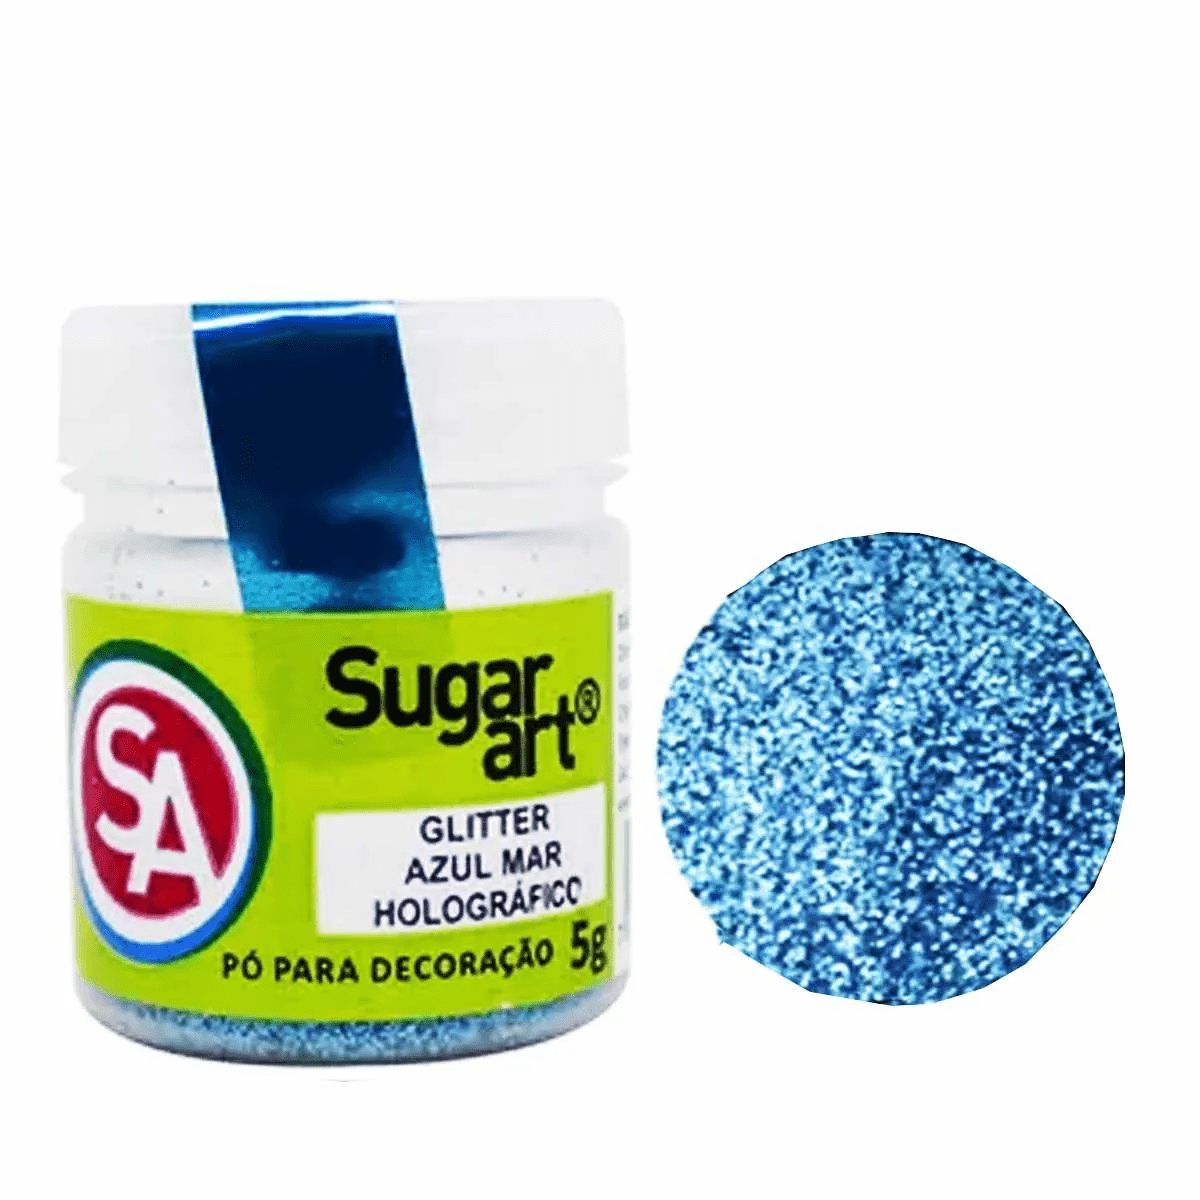 Pó para decoração Glitter Sugar Art - cor Azul mar holográfico - 5g